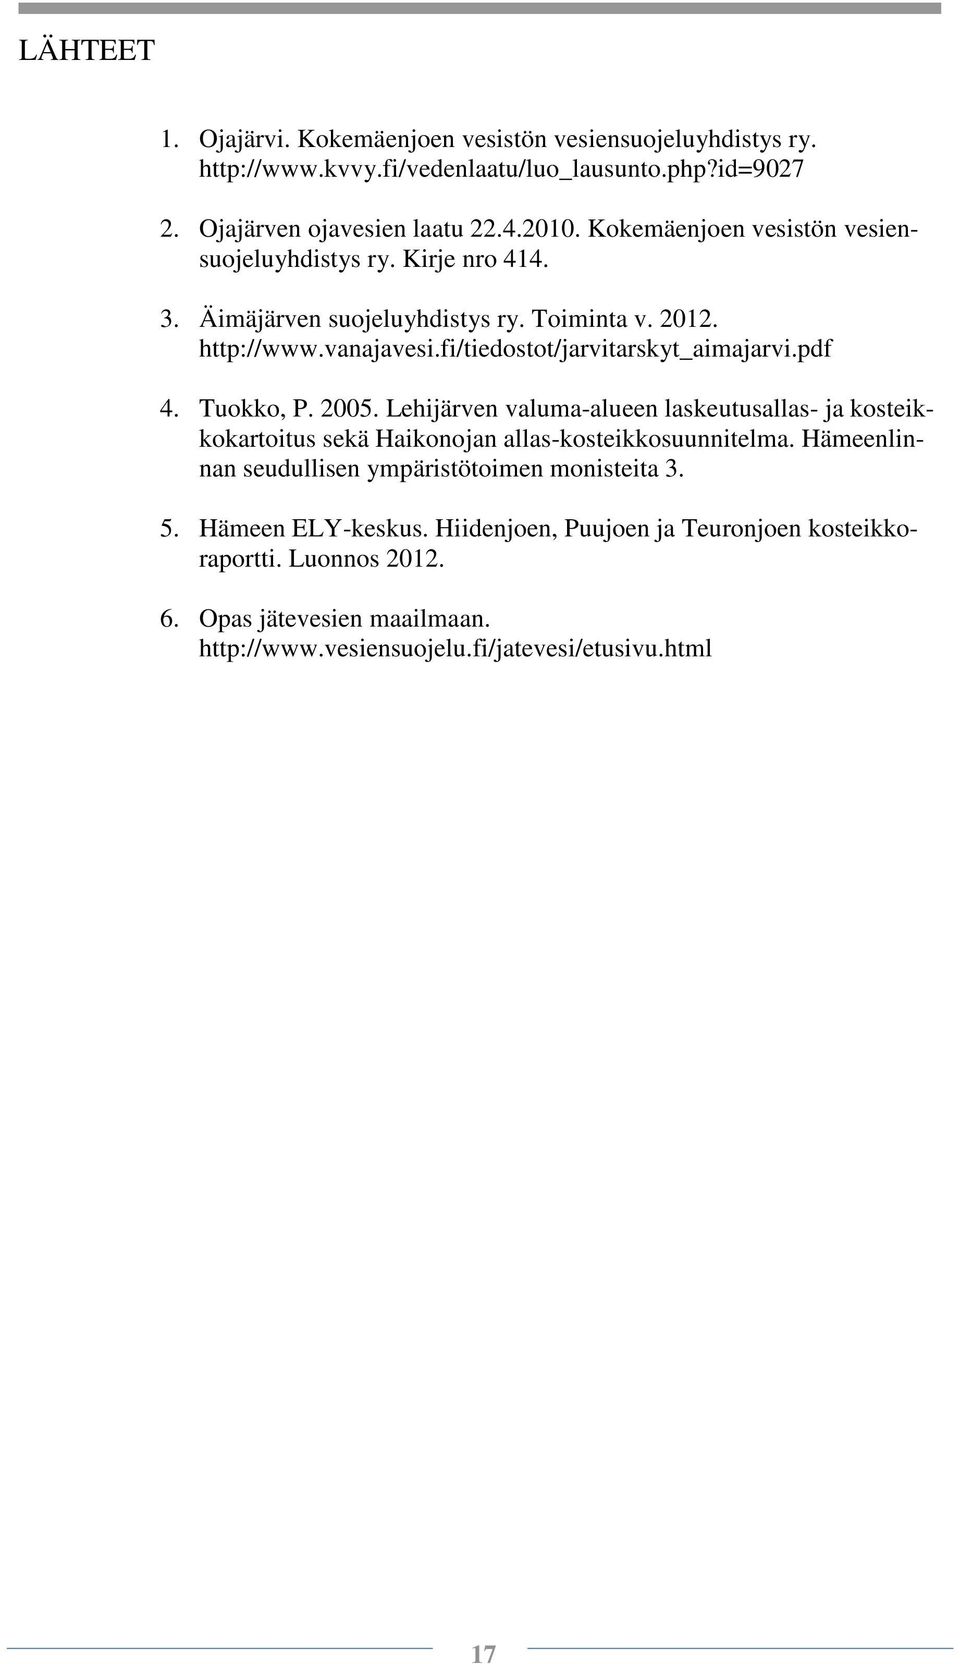 pdf 4. Tuokko, P. 2005. Lehijärven valuma-alueen laskeutusallas- ja kosteikkokartoitus sekä Haikonojan allas-kosteikkosuunnitelma.